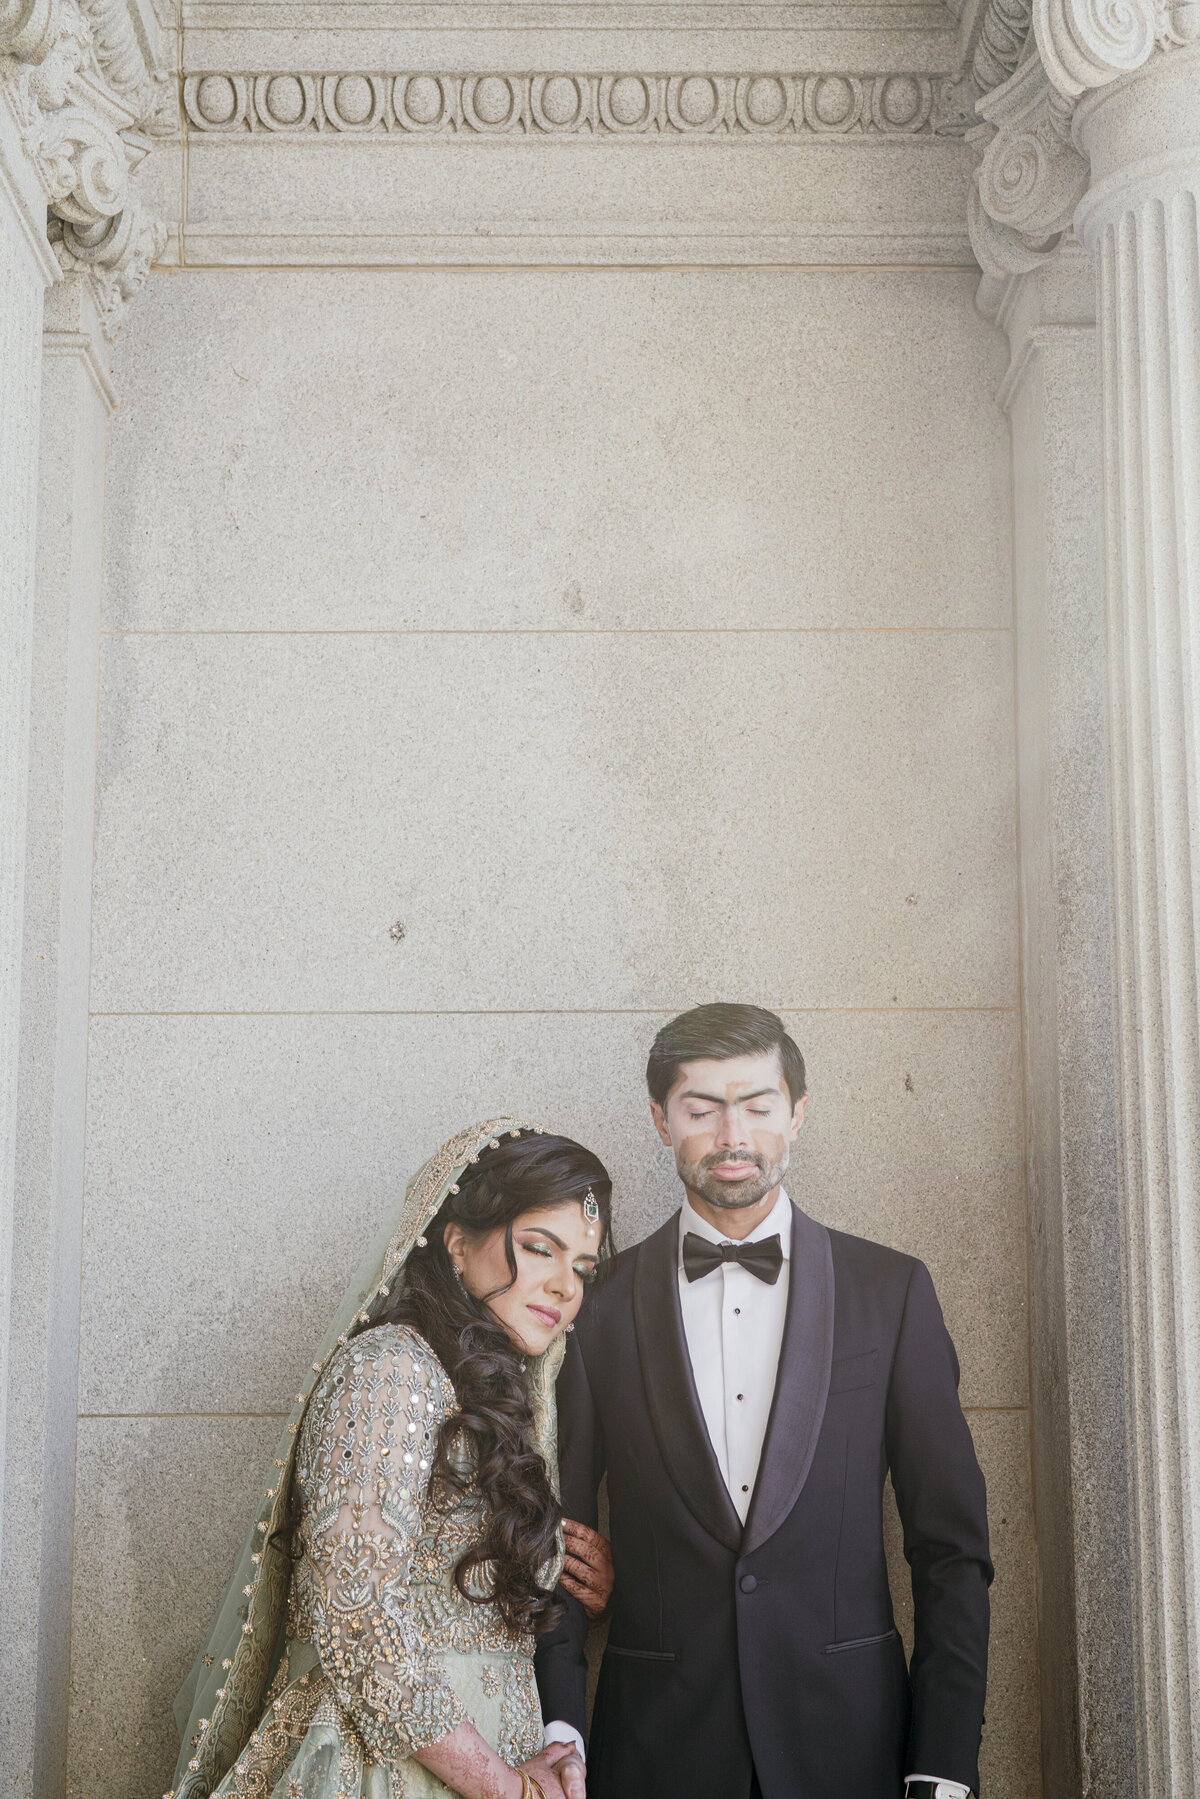 Washington D.C. Wedding Photography